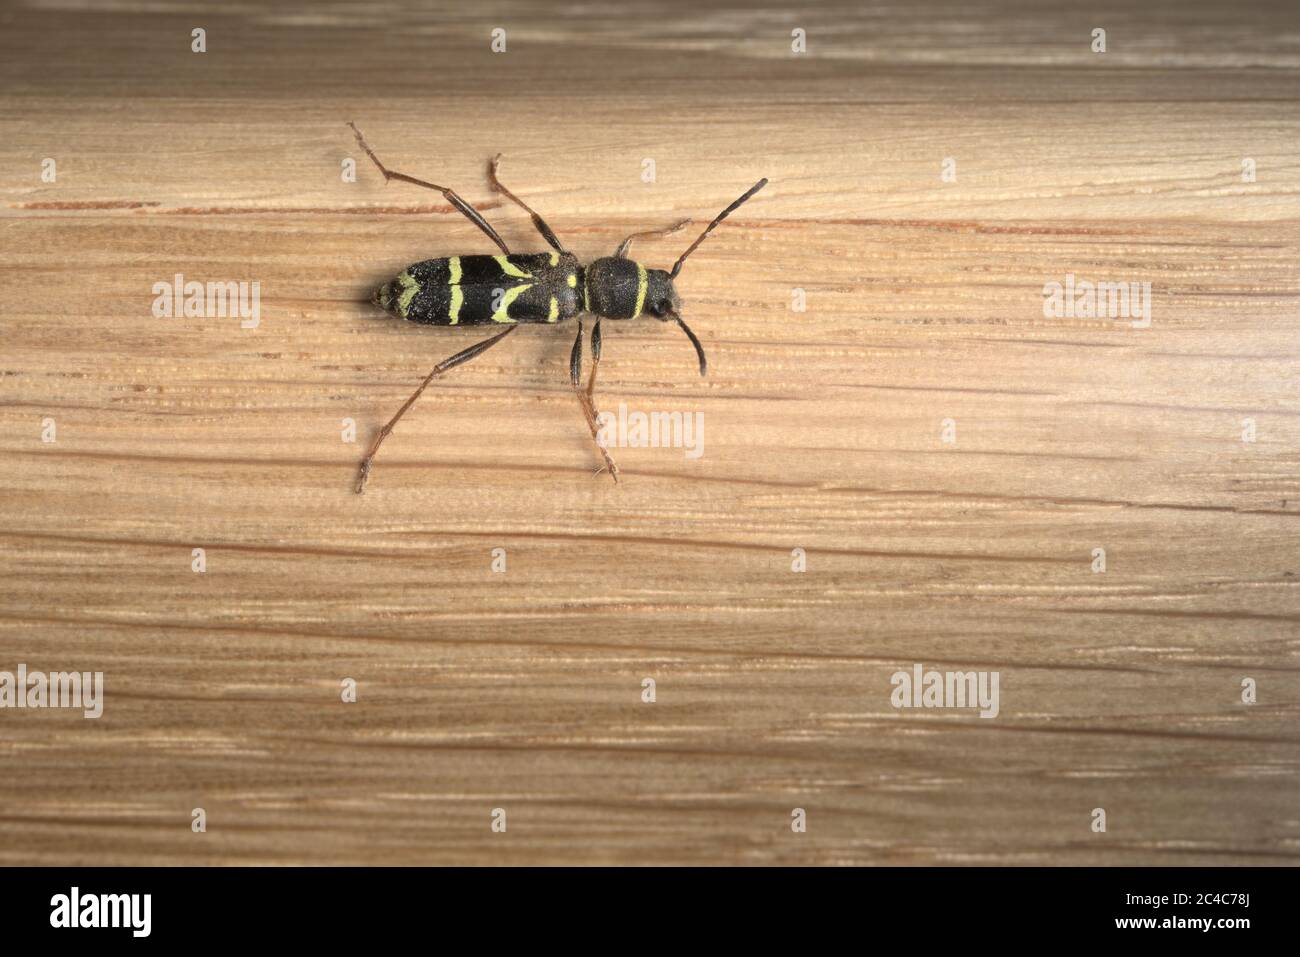 Il motivo impressionante e riconoscibile sul retro di un betolo di vespa su fondo di quercia. Utile per l'identificazione, maggiore profondità di campo. Foto Stock